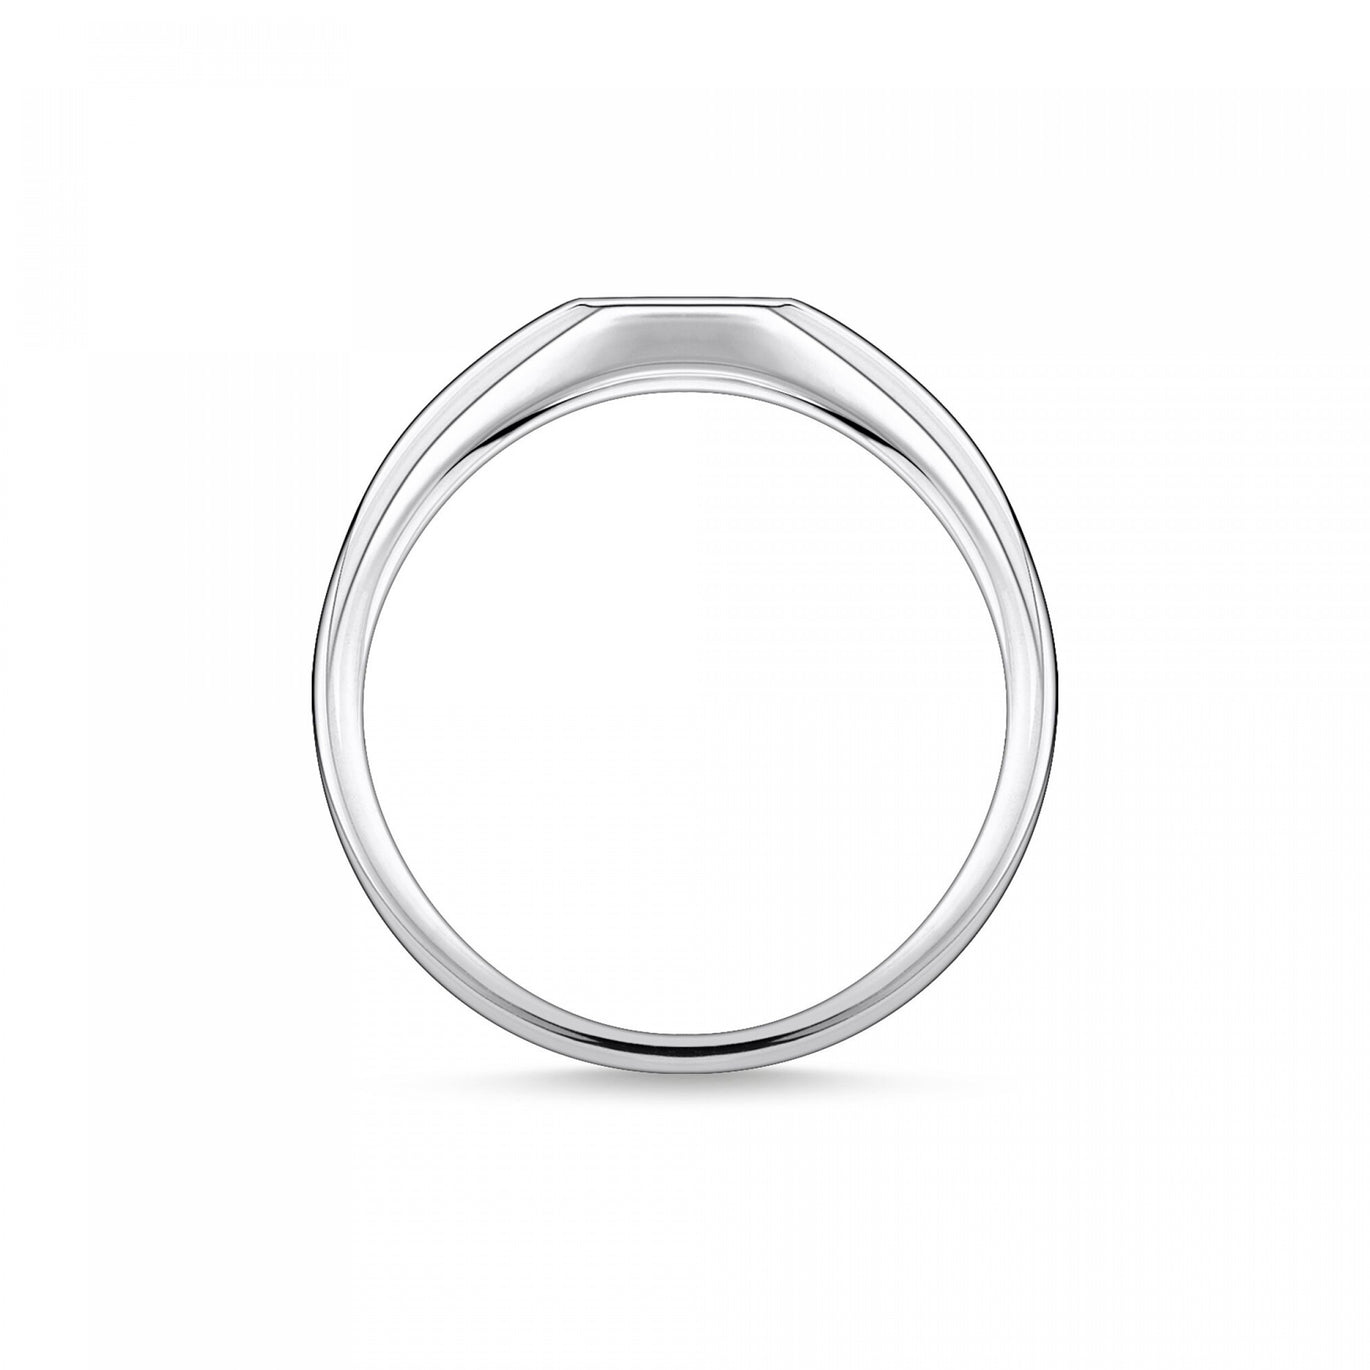 Thomas Sabo Ring Engraved Star Silver